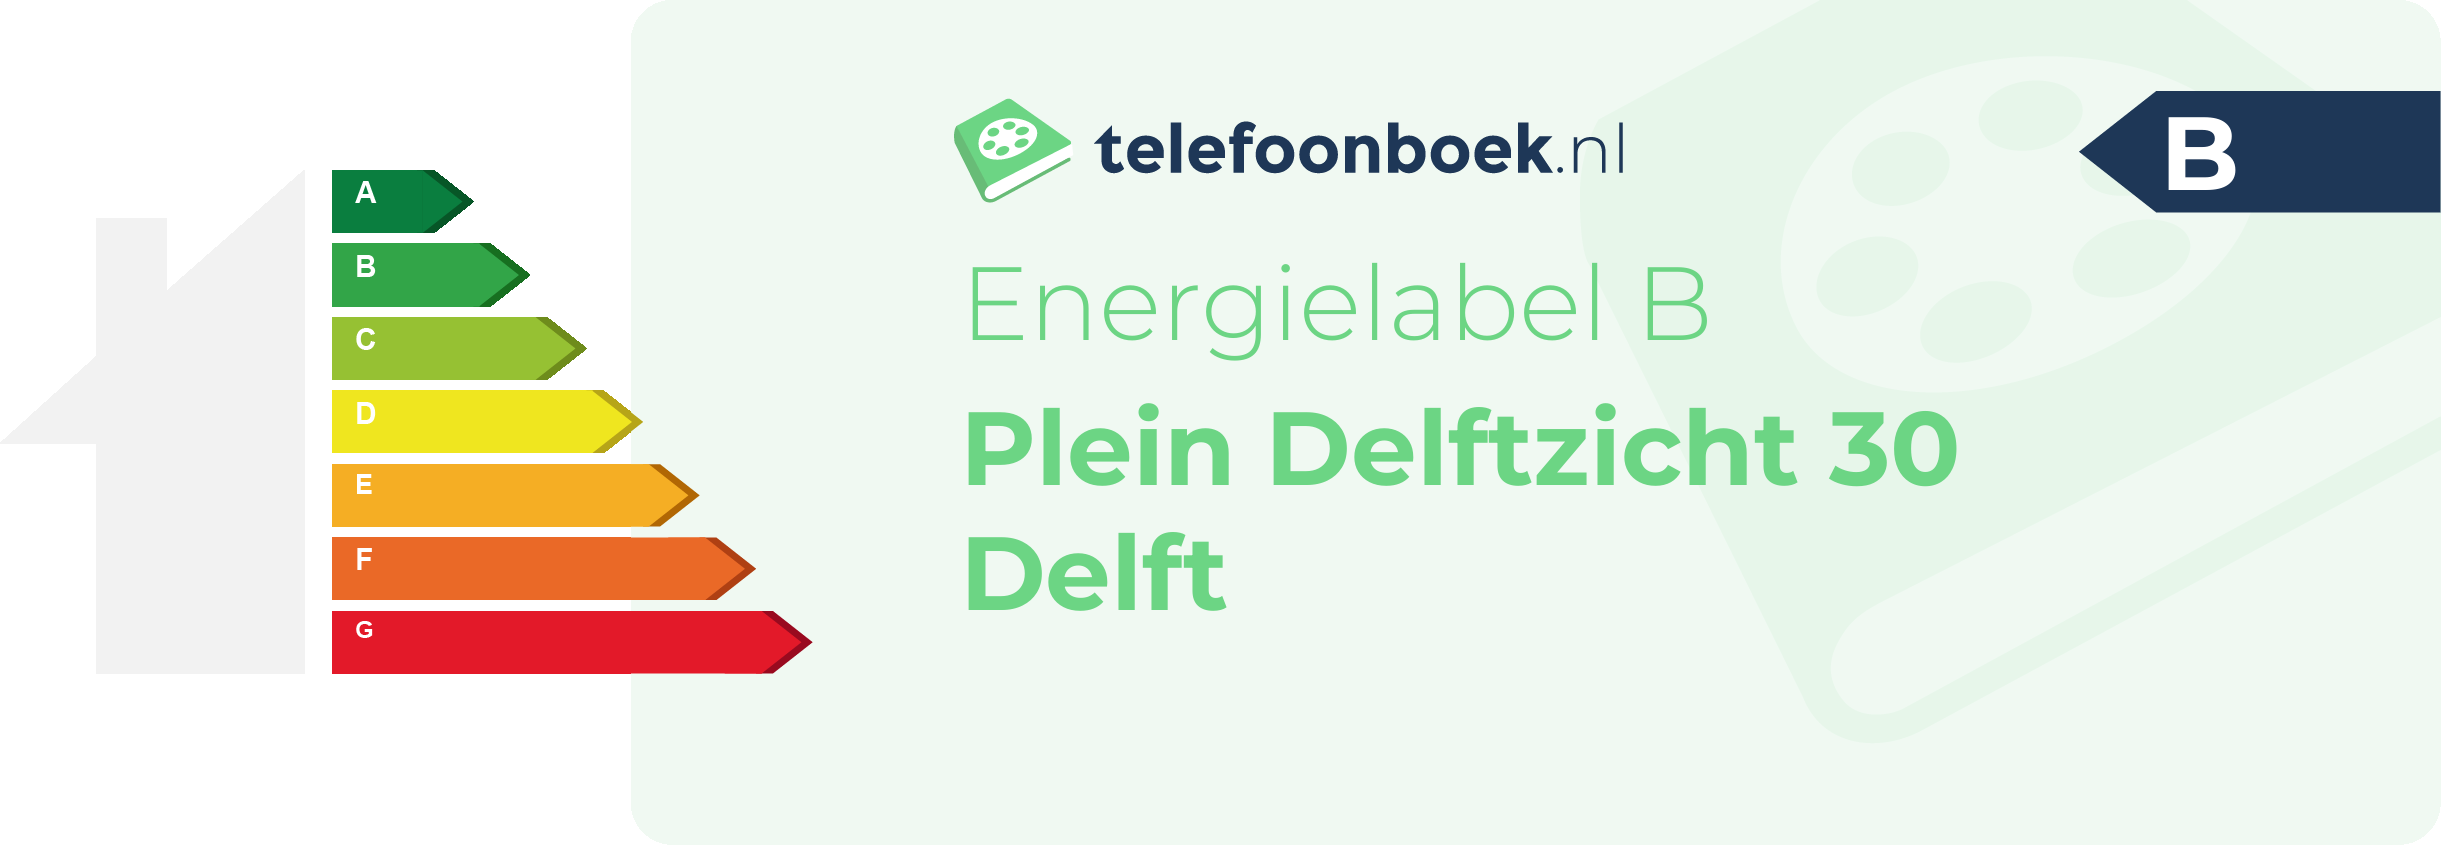 Energielabel Plein Delftzicht 30 Delft